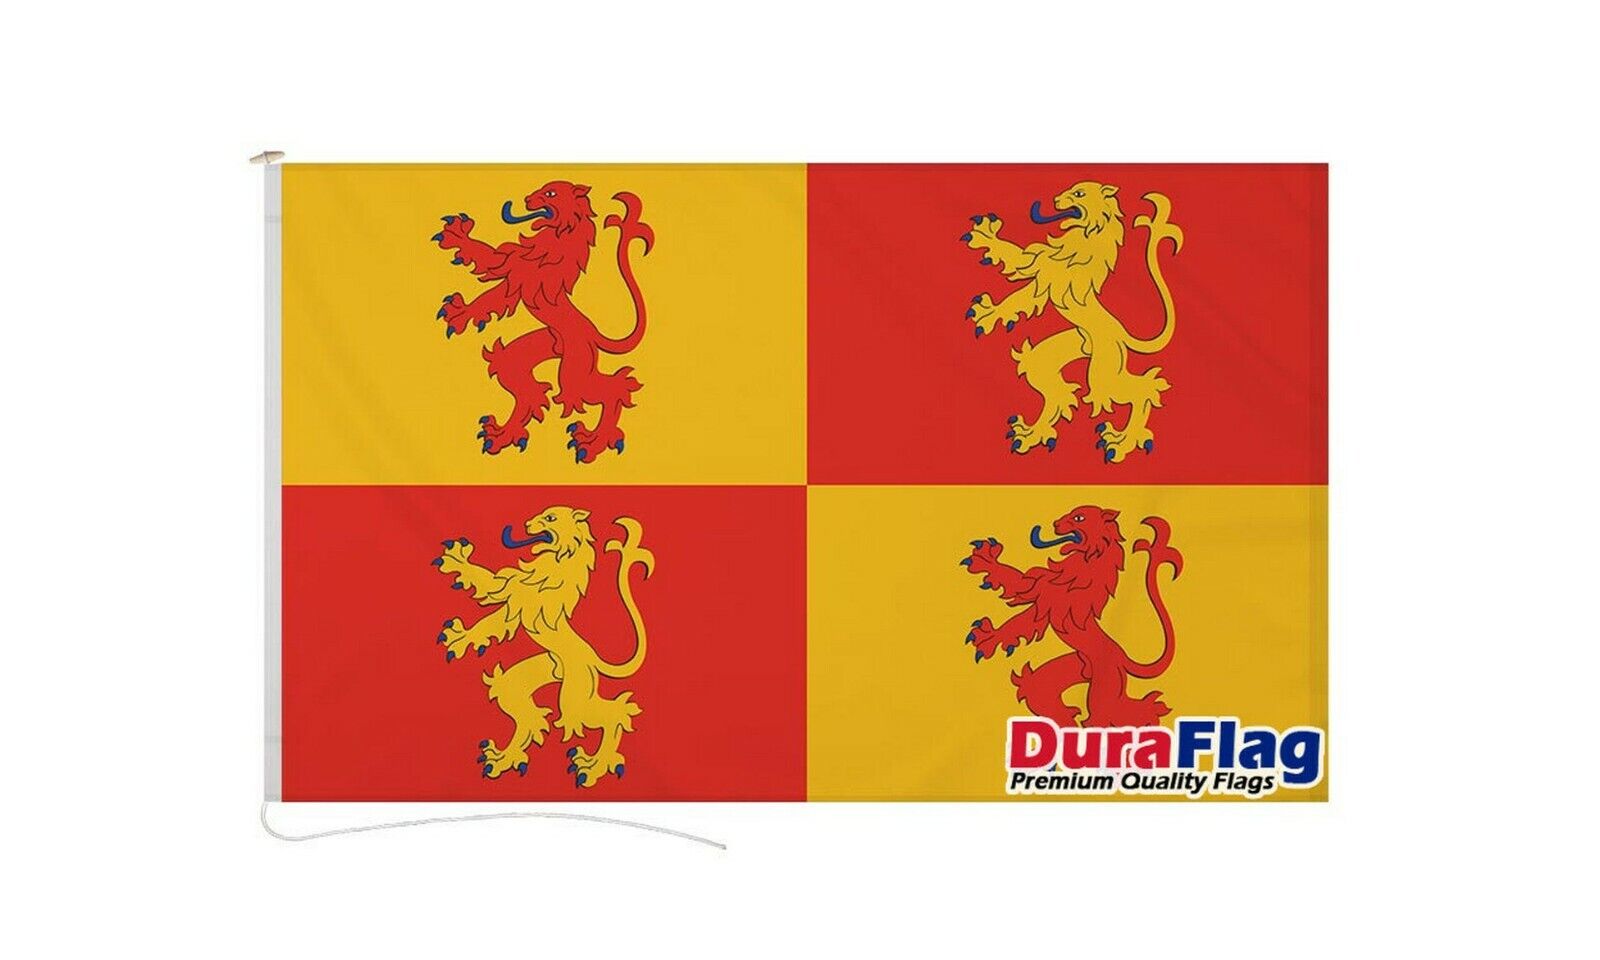 OWAIN GLYN DWR WALES DURAFLAG 150cm x 90cm HIGH QUALITY FLAG ROPE & TOGGLE